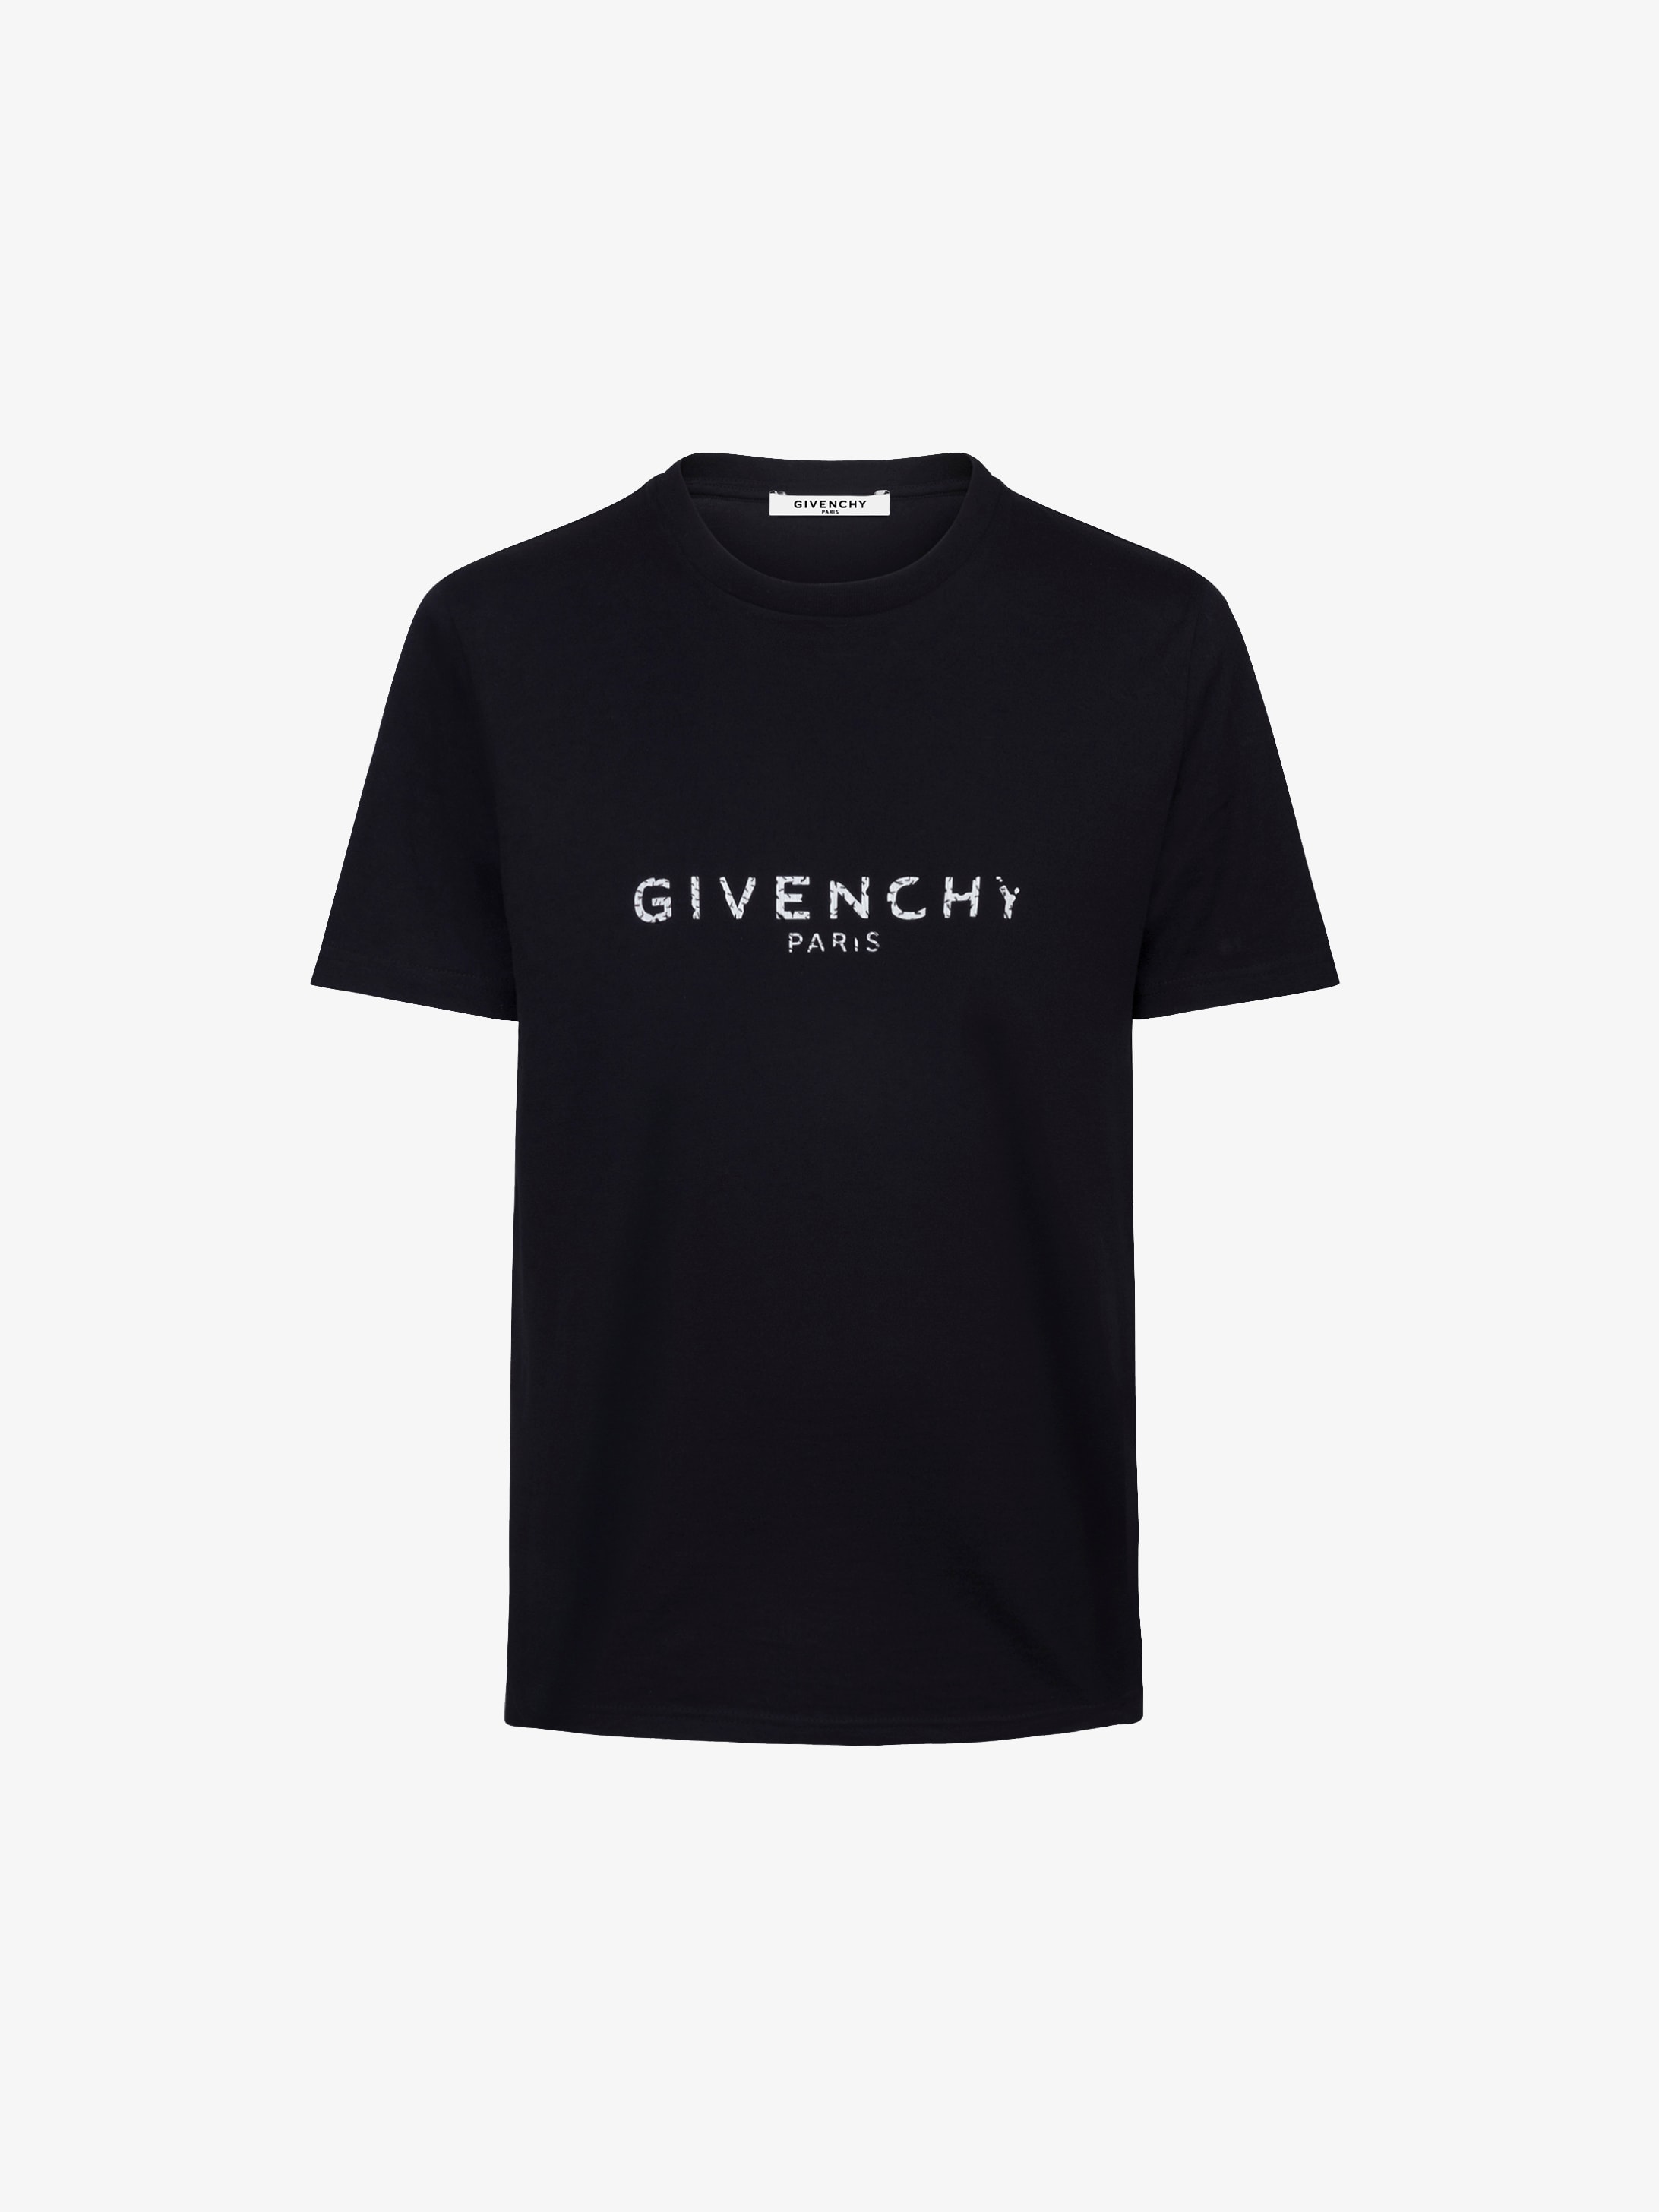 givenchy shirt cheap